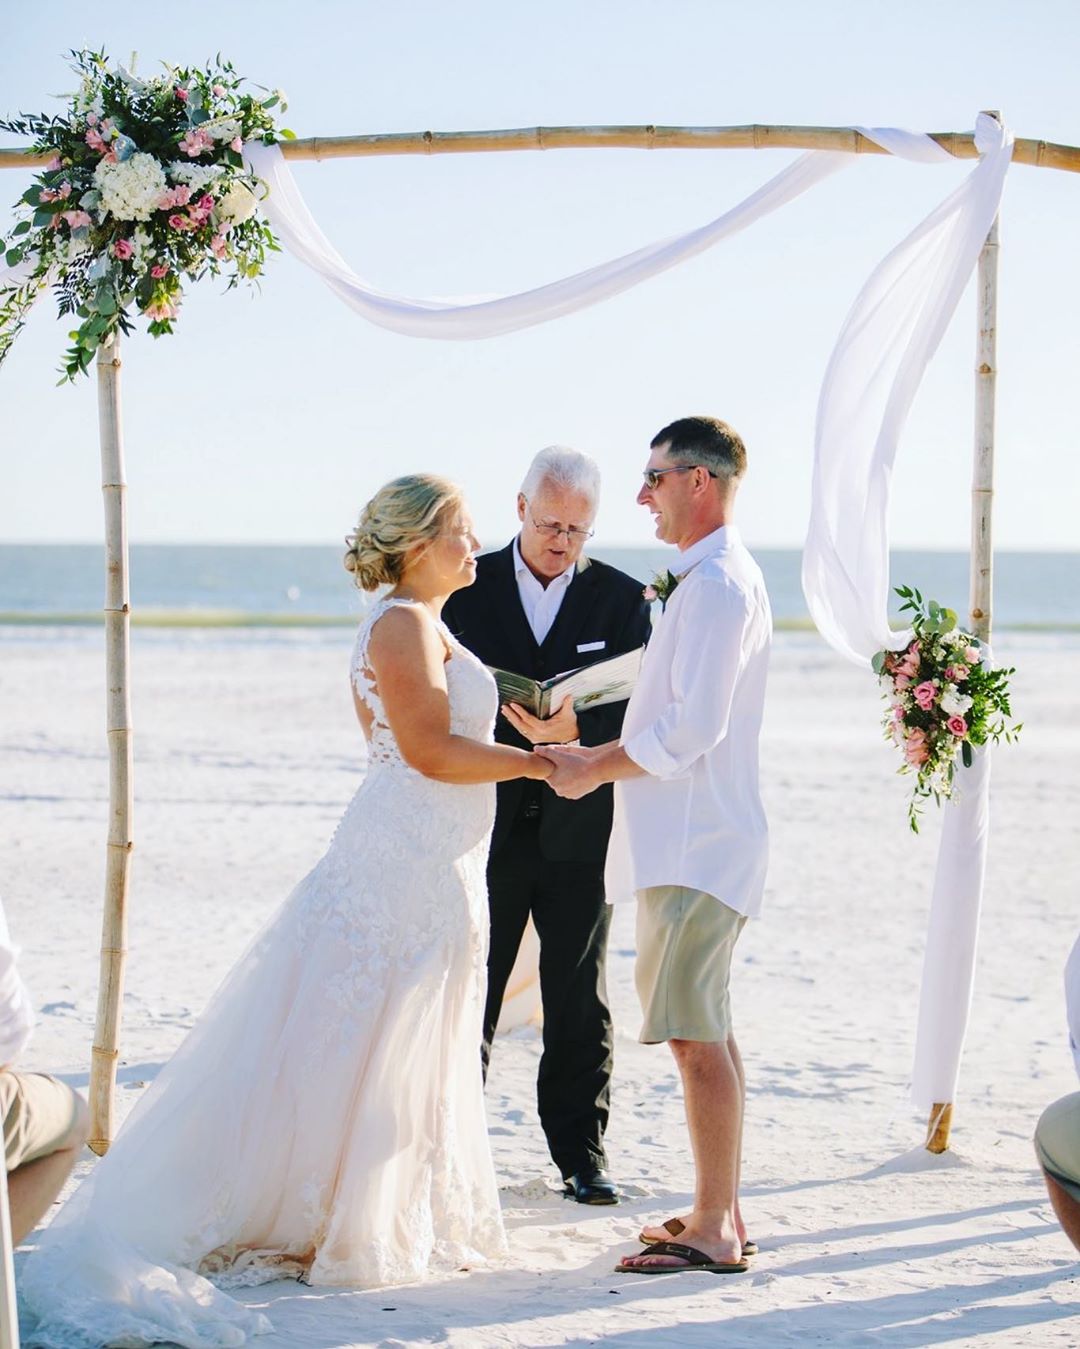 https://marriedinpalmbeach.com/wp-content/uploads/2017/06/5-Beach-Wedding_Captured-Beauty-Photography.jpg